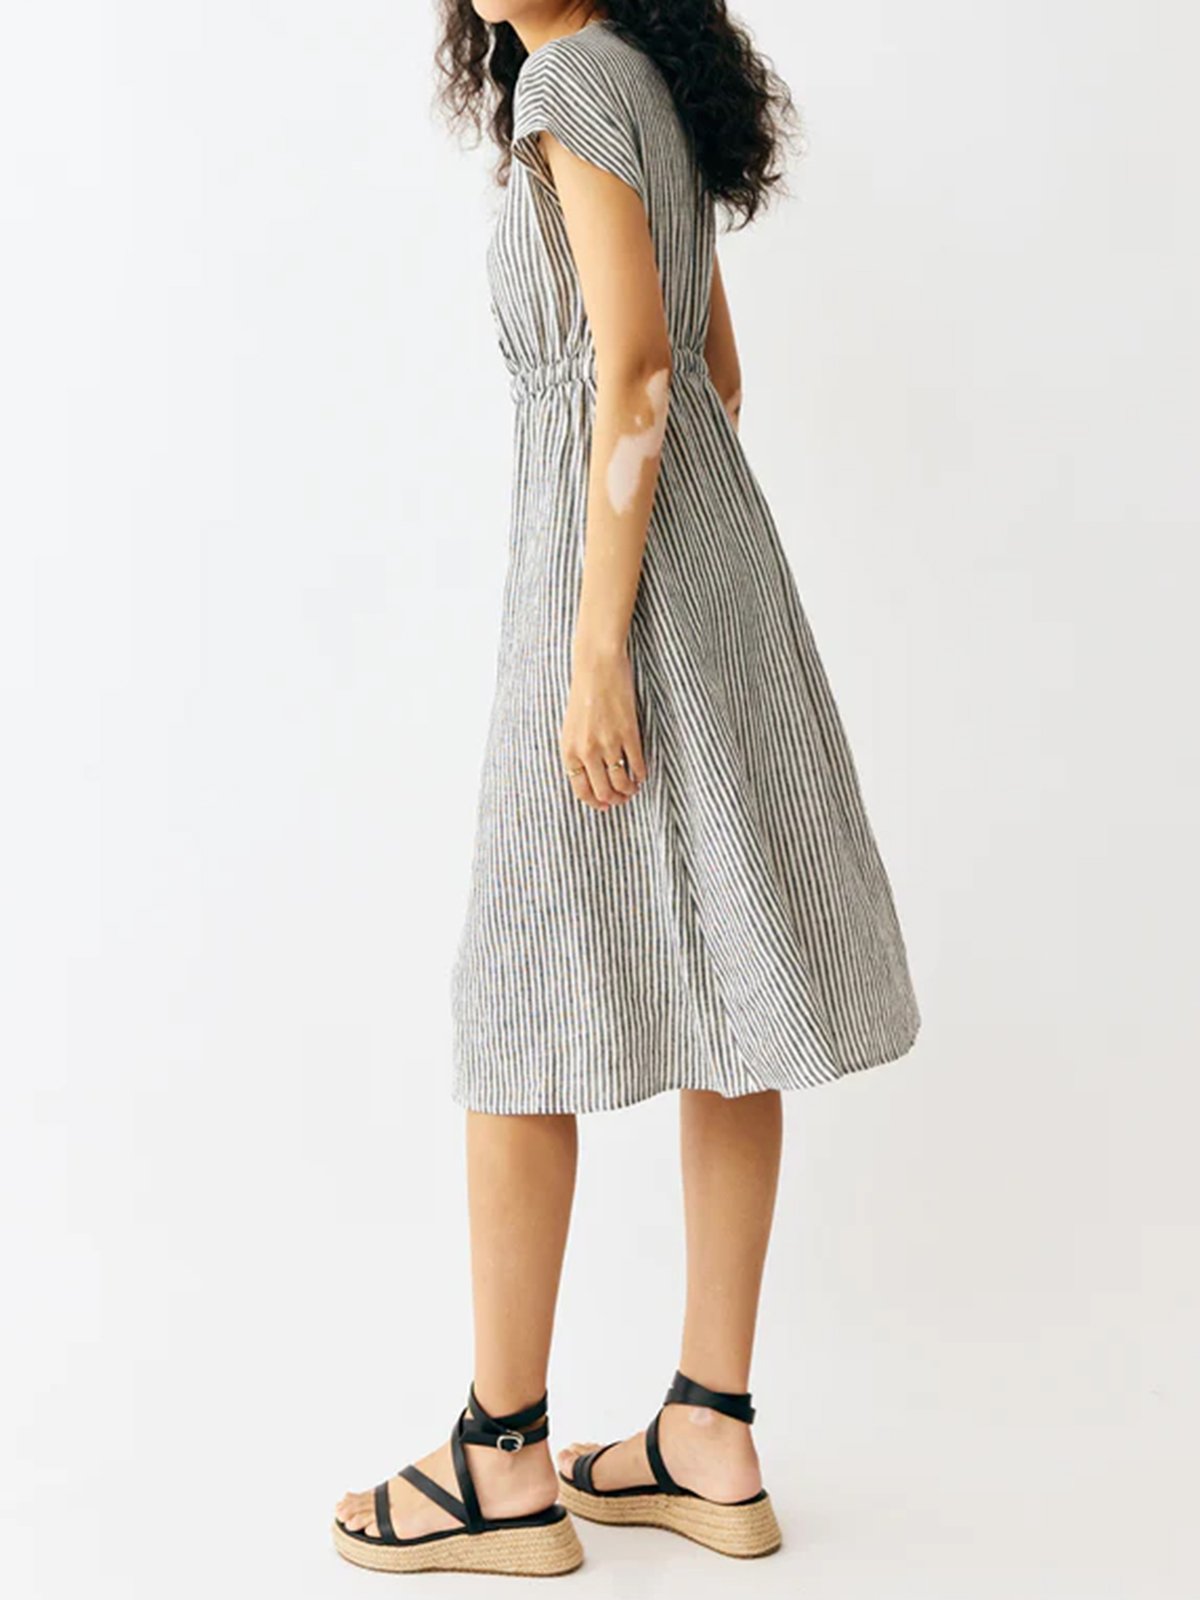 Kira 100% Linen Striped Dress with Elastic Waistband